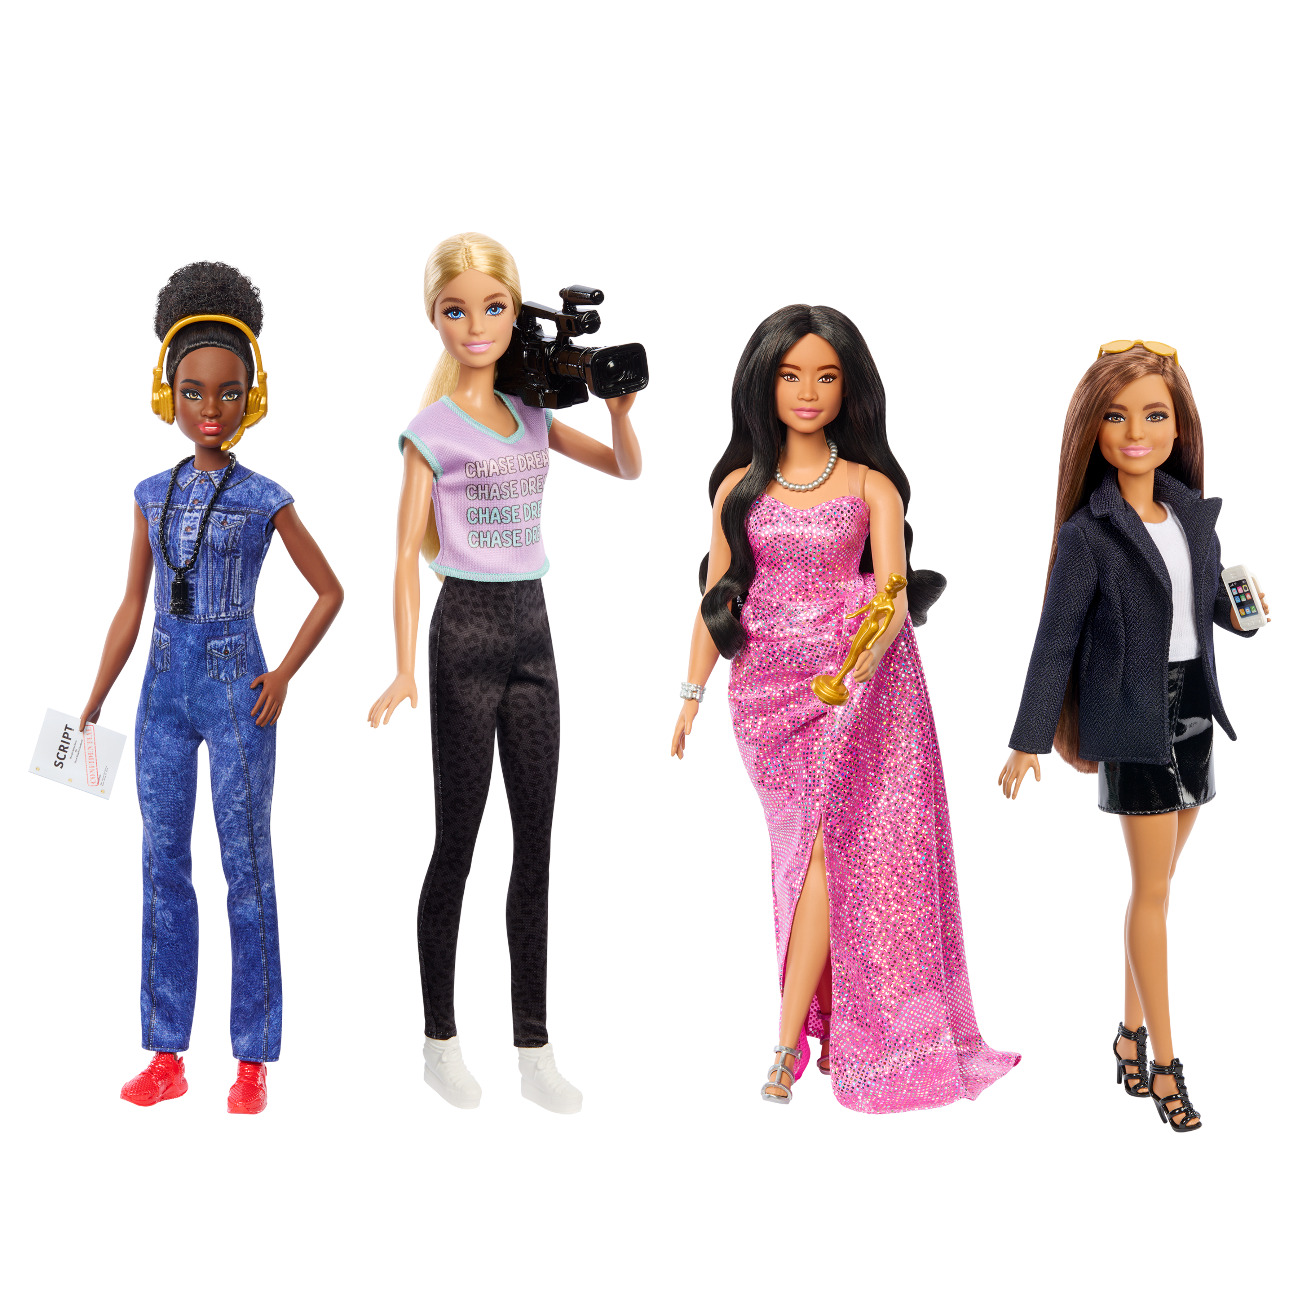 Barbie lança nova linha de bonecas inspirada em profissões do mercado audiovisual